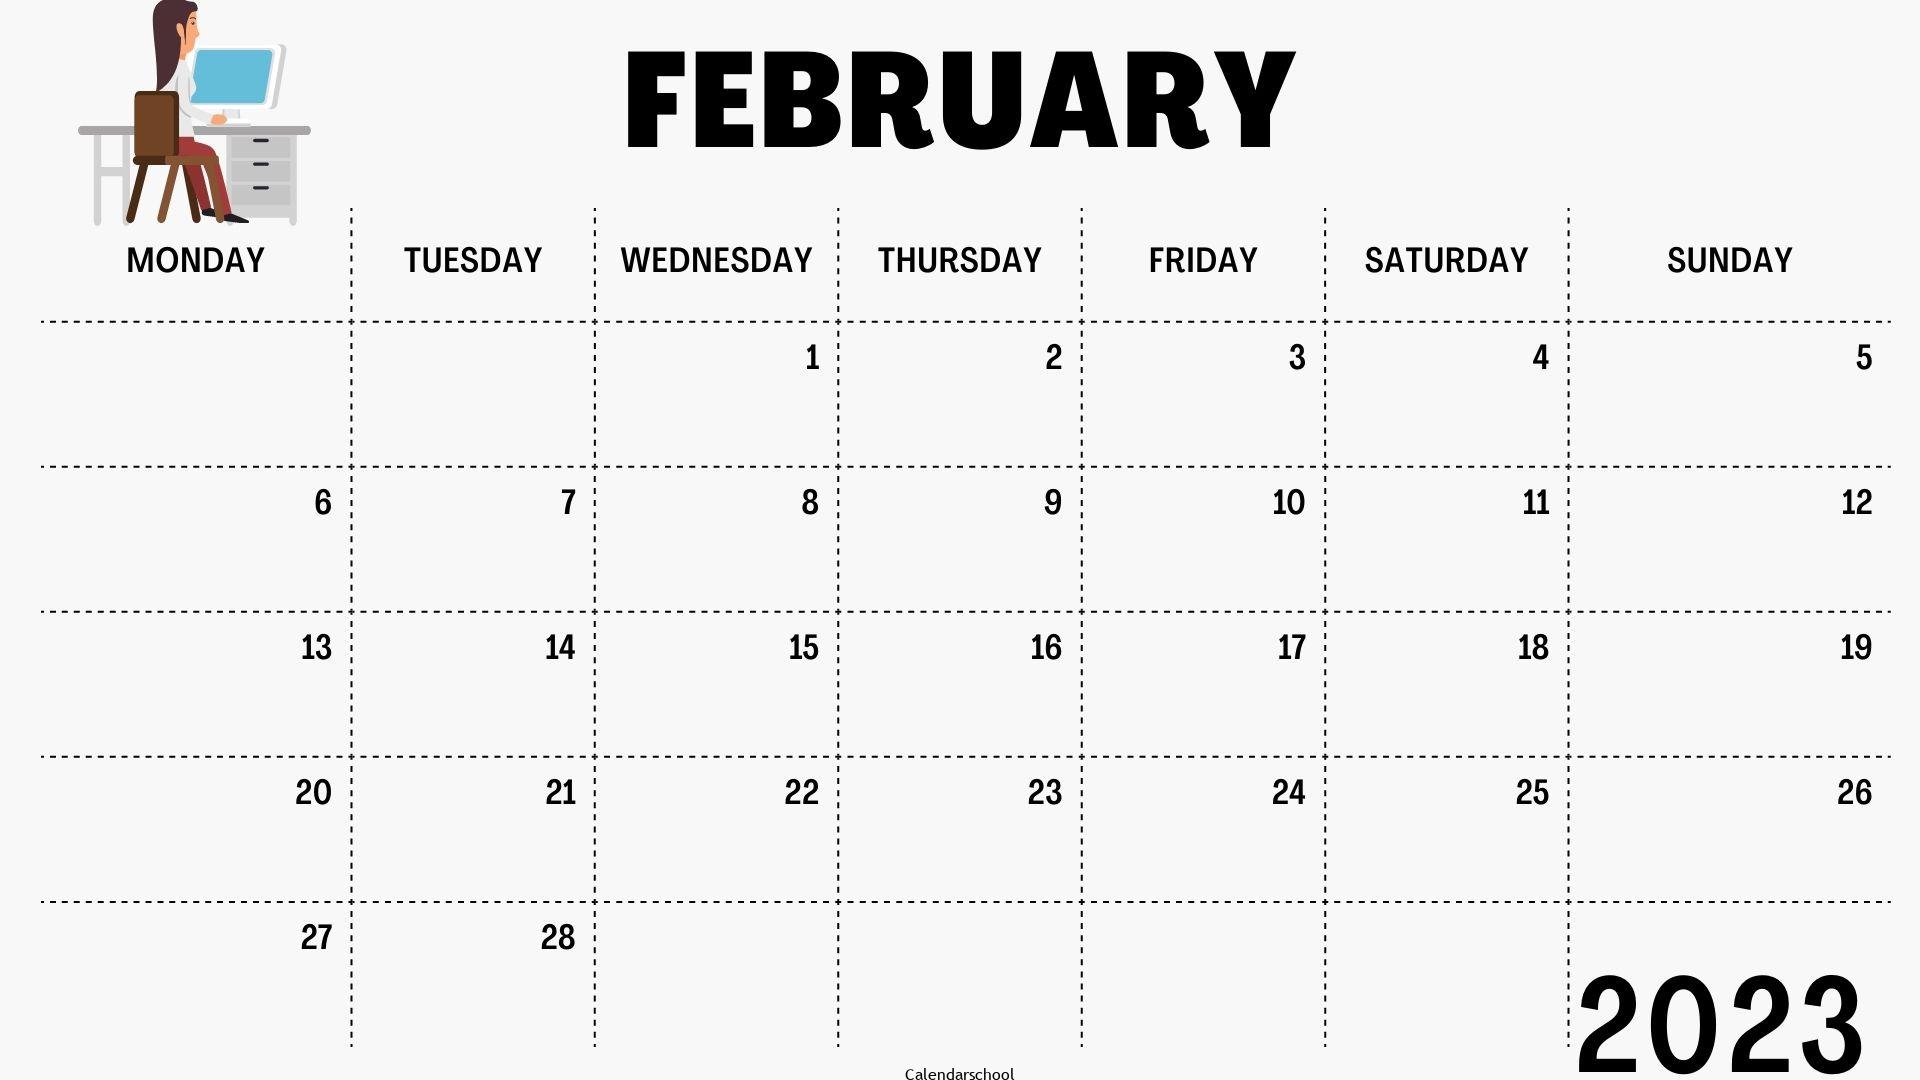 Islamic Calendar 2023 February